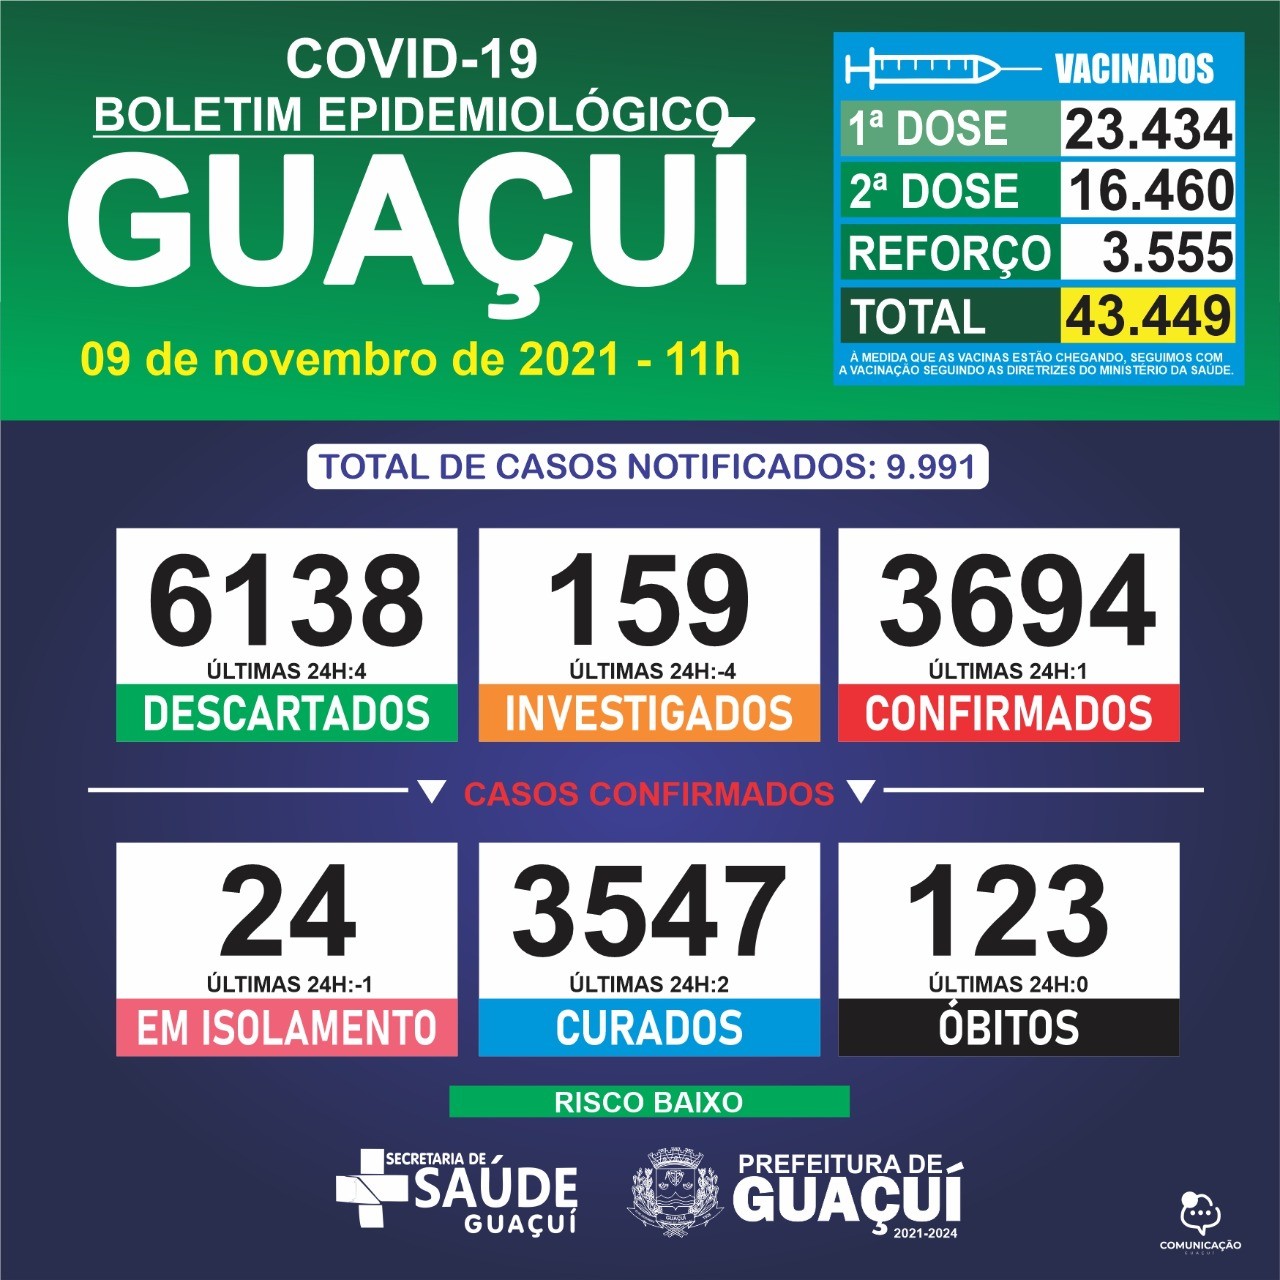 Boletim Epidemiológico 09/11/2021: Guaçuí registra 01 caso confirmado e 02 curados nas últimas 24 horas